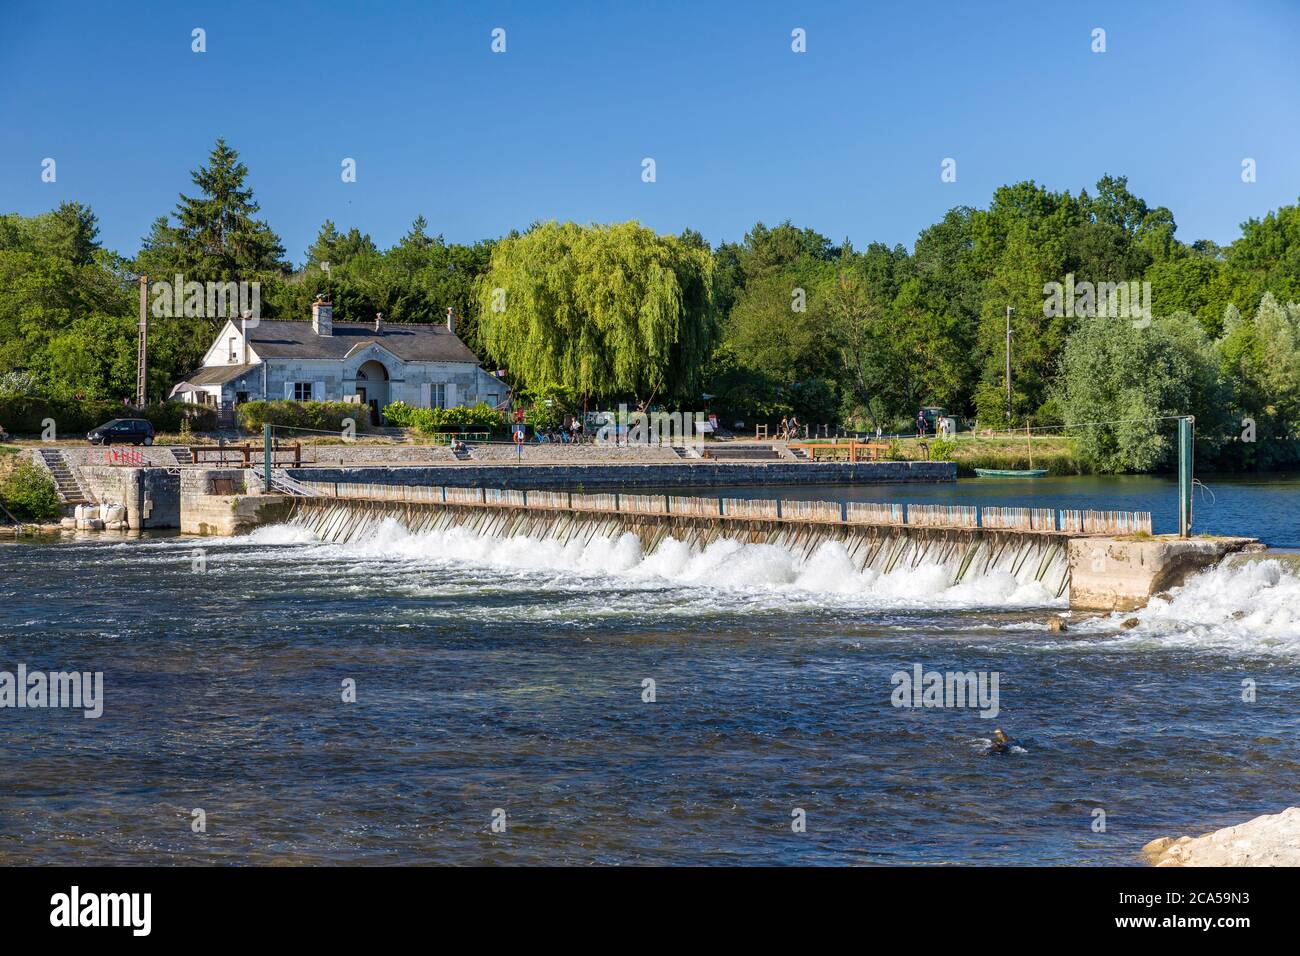 Francia, Indre et Loire, Valle della Loira dichiarata Patrimonio Mondiale dall'UNESCO, Civray-de-Touraine, bordo dello Cher, barriera dell'ago sullo Cher costruito nel 184 Foto Stock